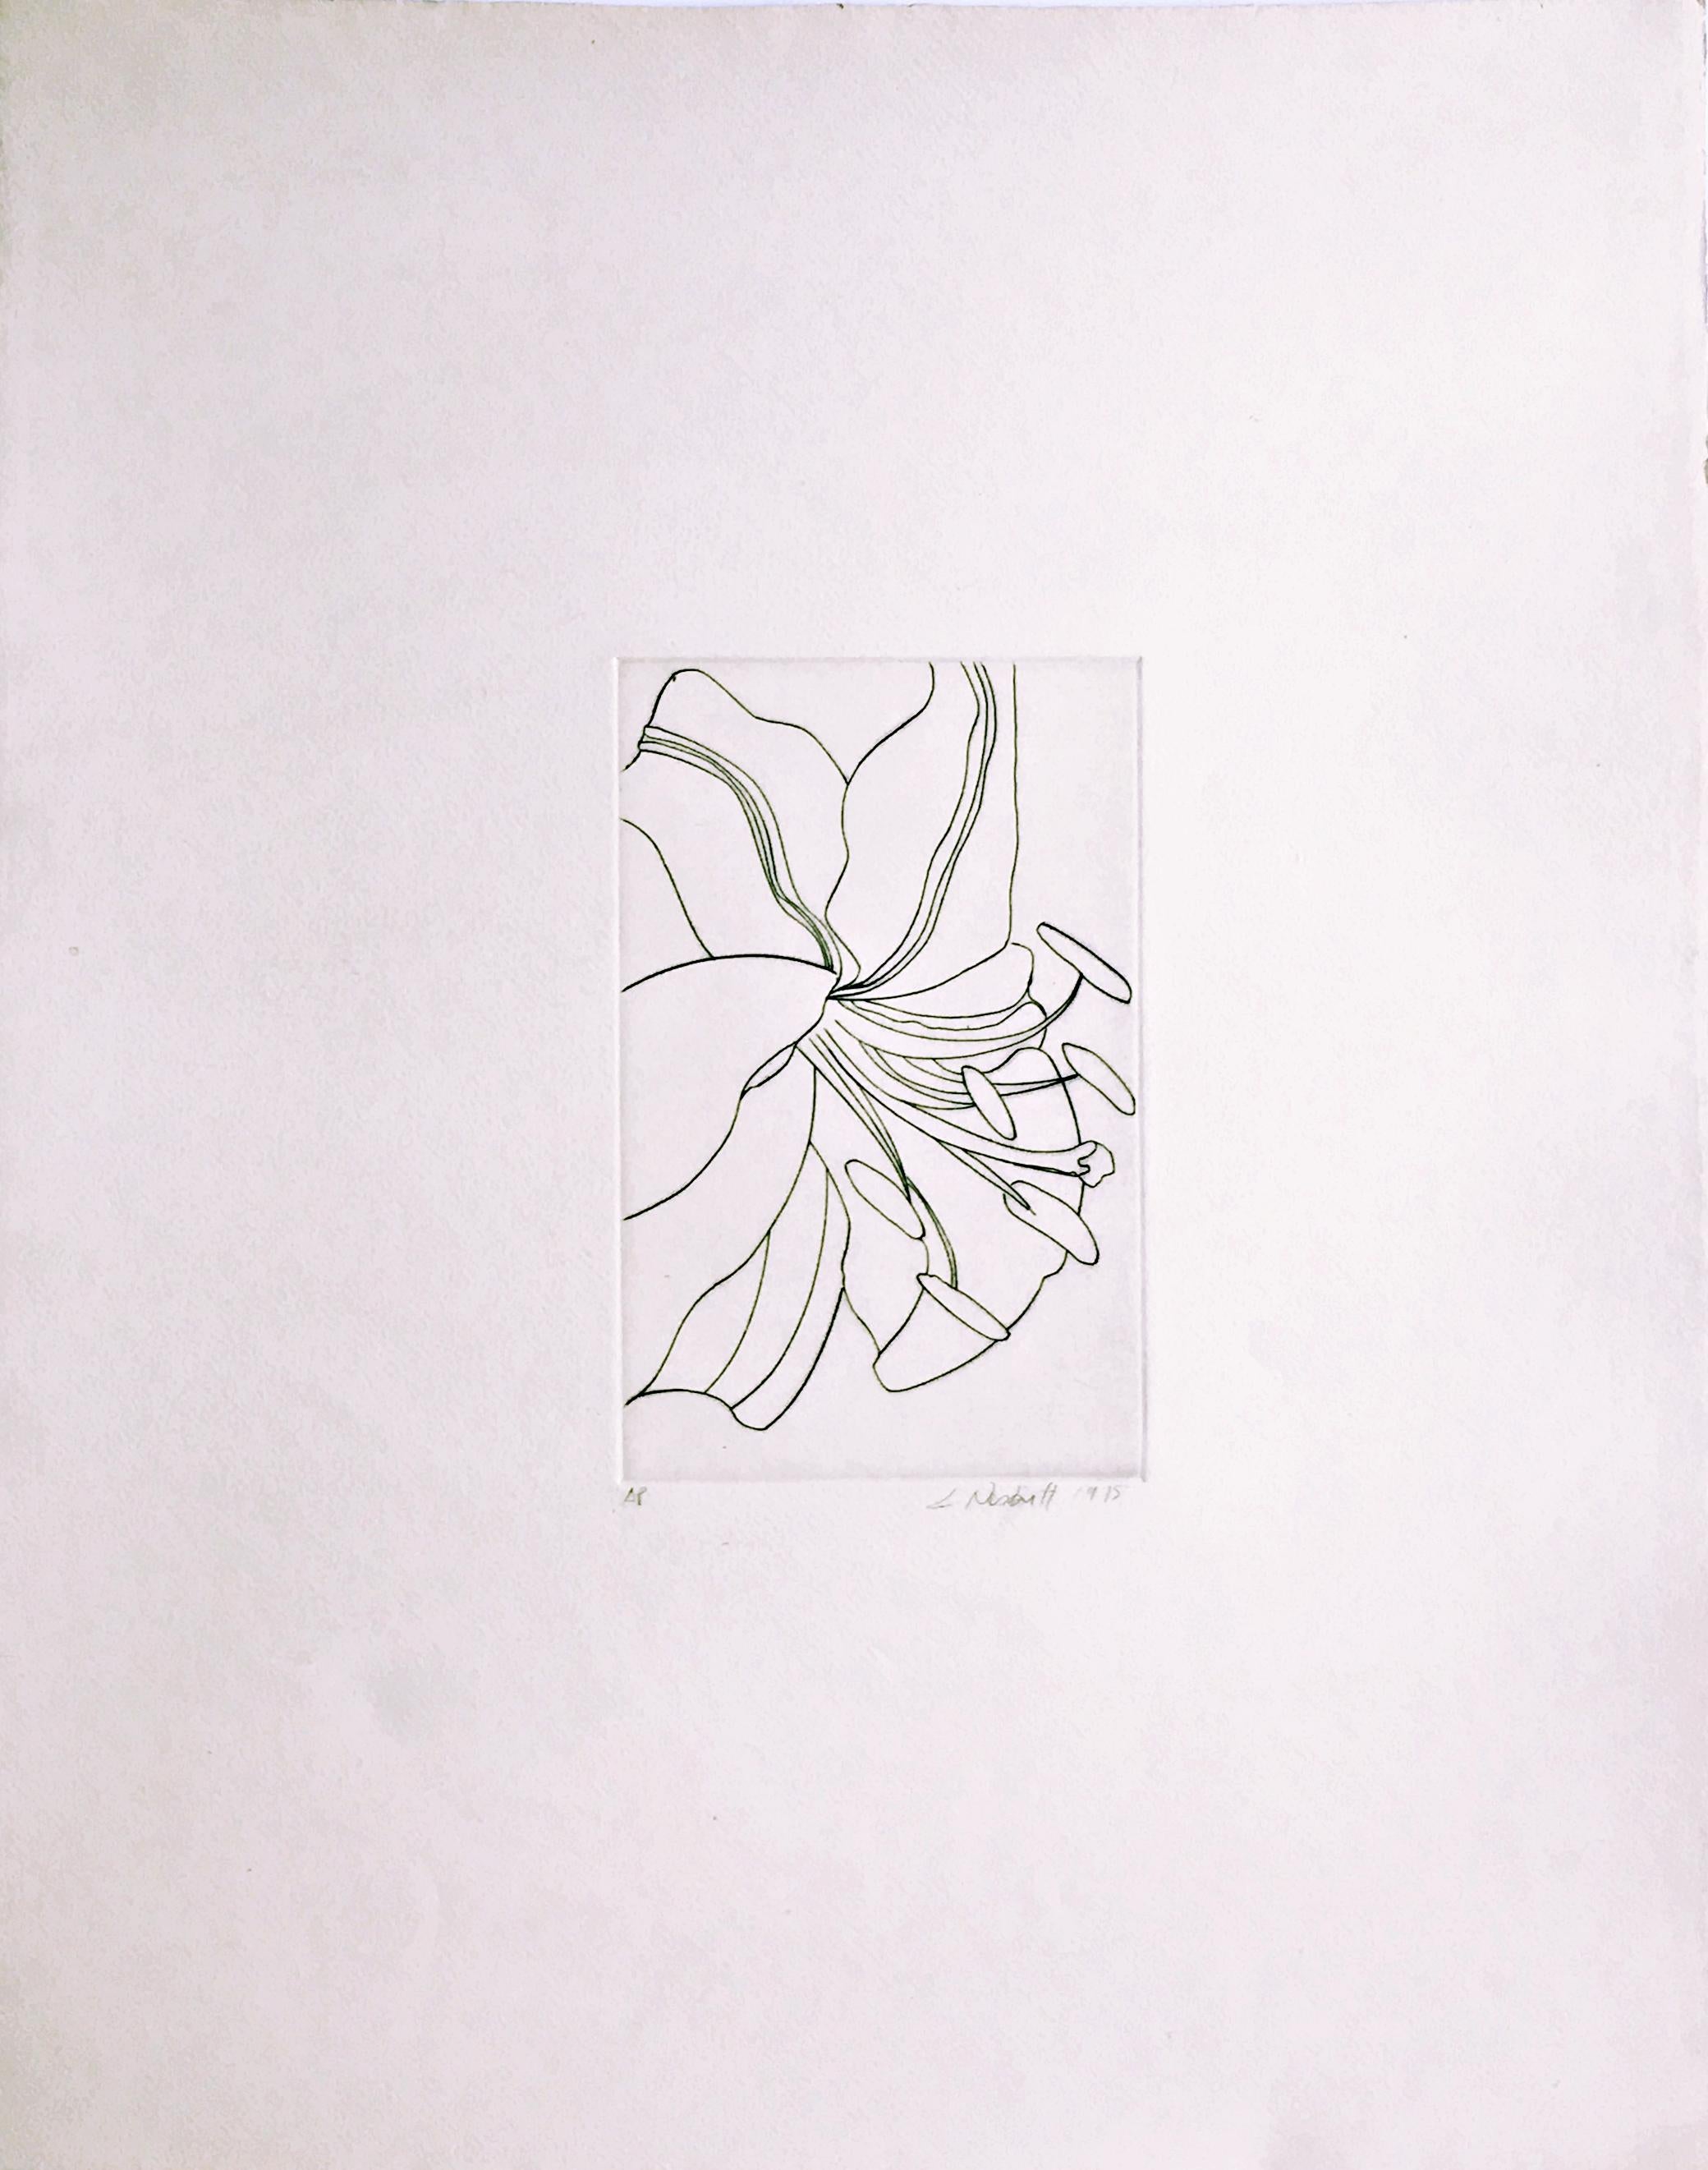 Lowell Nesbitt
Fleur sans titre, 1975
Gravure sur papier vélin
Signé à la main, numéroté AP et daté au recto.
24 × 19 pouces
Non encadré
Cette gravure à l'eau-forte d'une fleur, poignante et délicatement rendue par Lowell Nesbitt, ferait un très